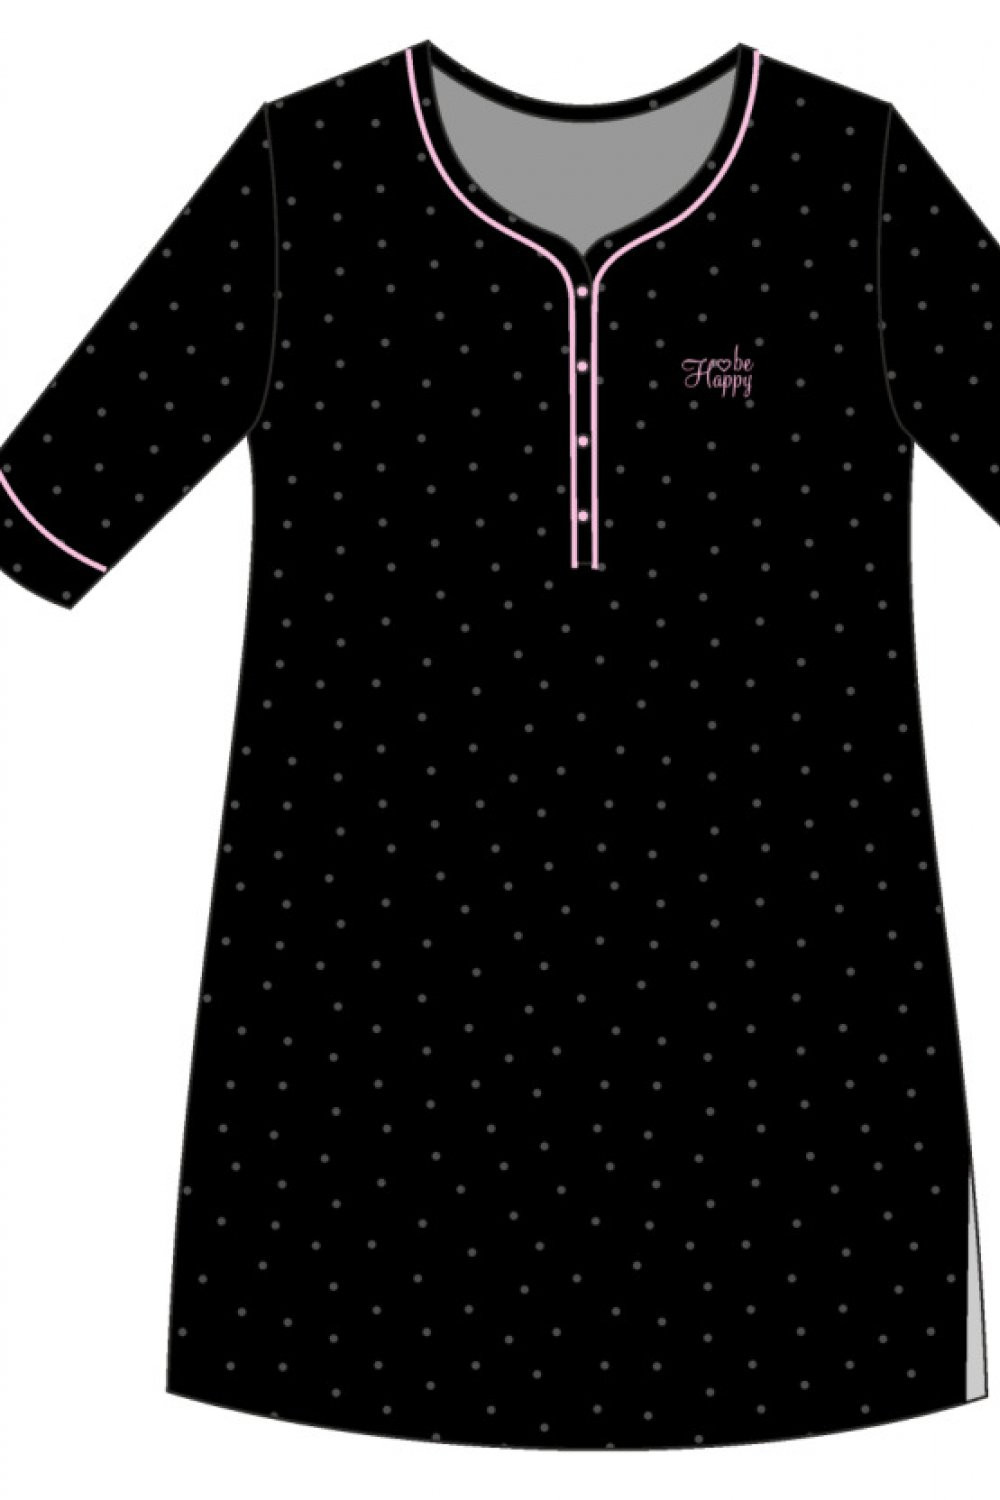 Noční košile Be 2 černá M model 16192795 - Cornette